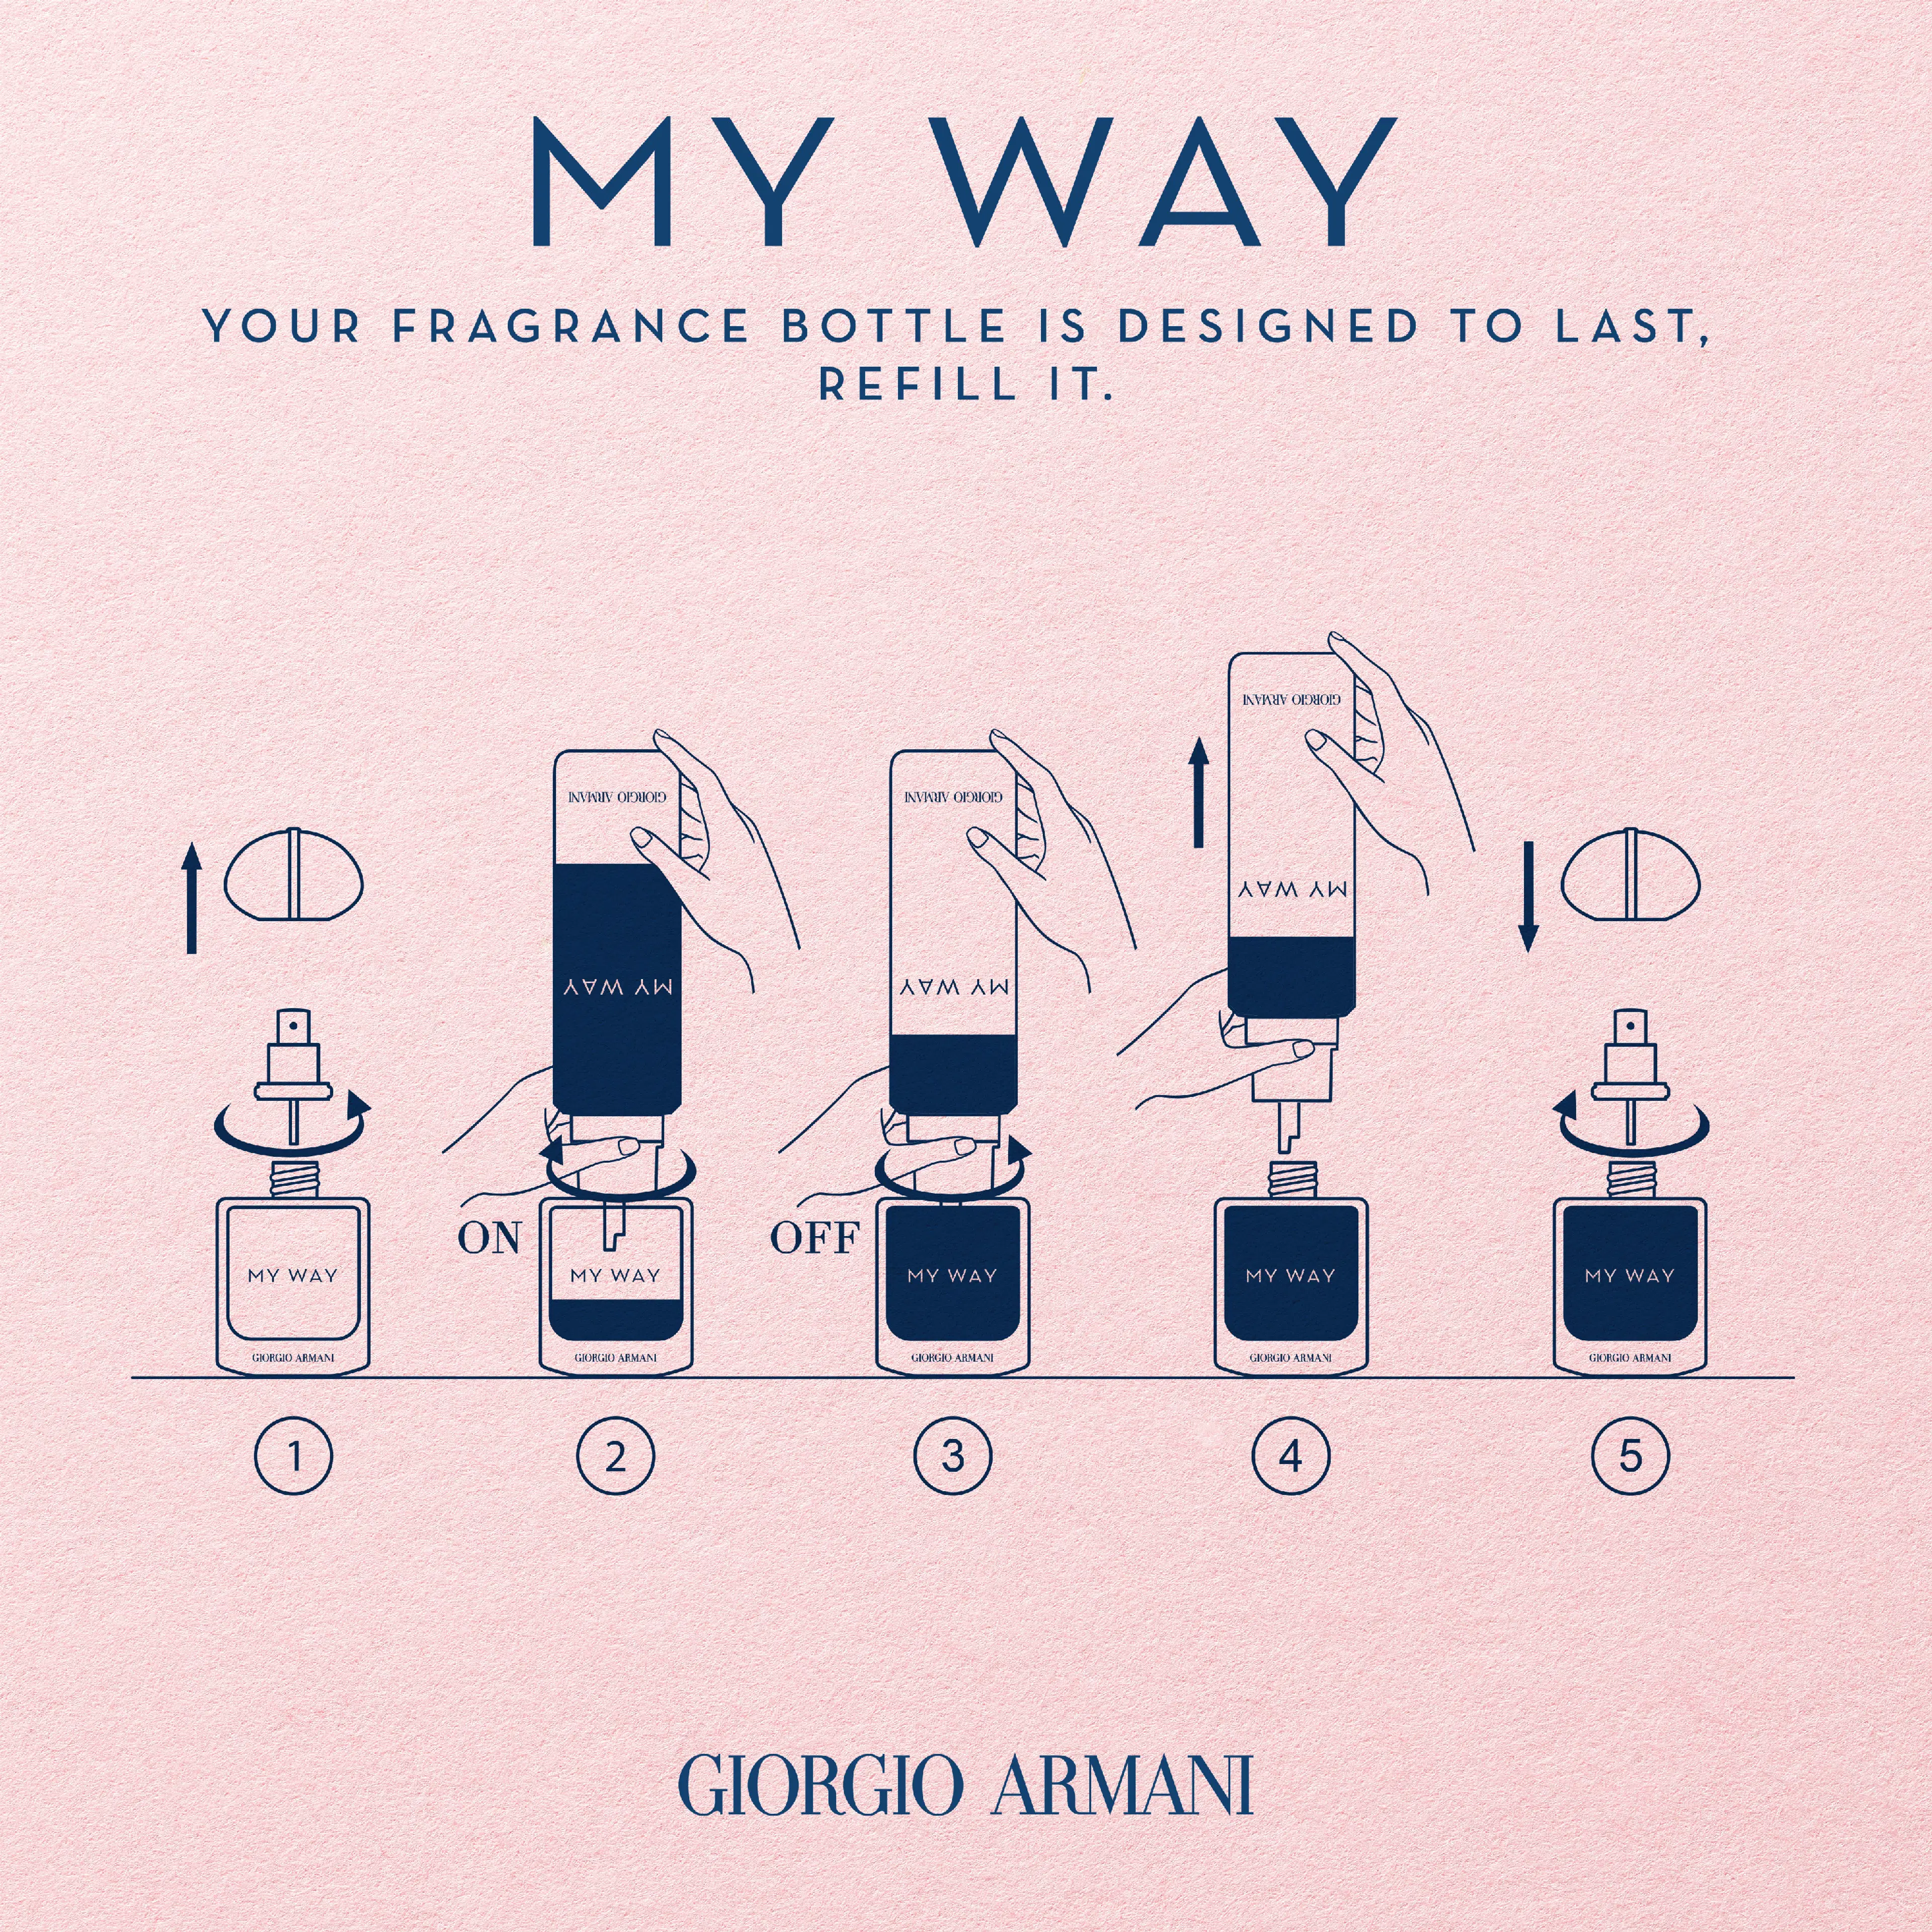 Giorgio Armani My Way Parfum tuoksu 50 ml